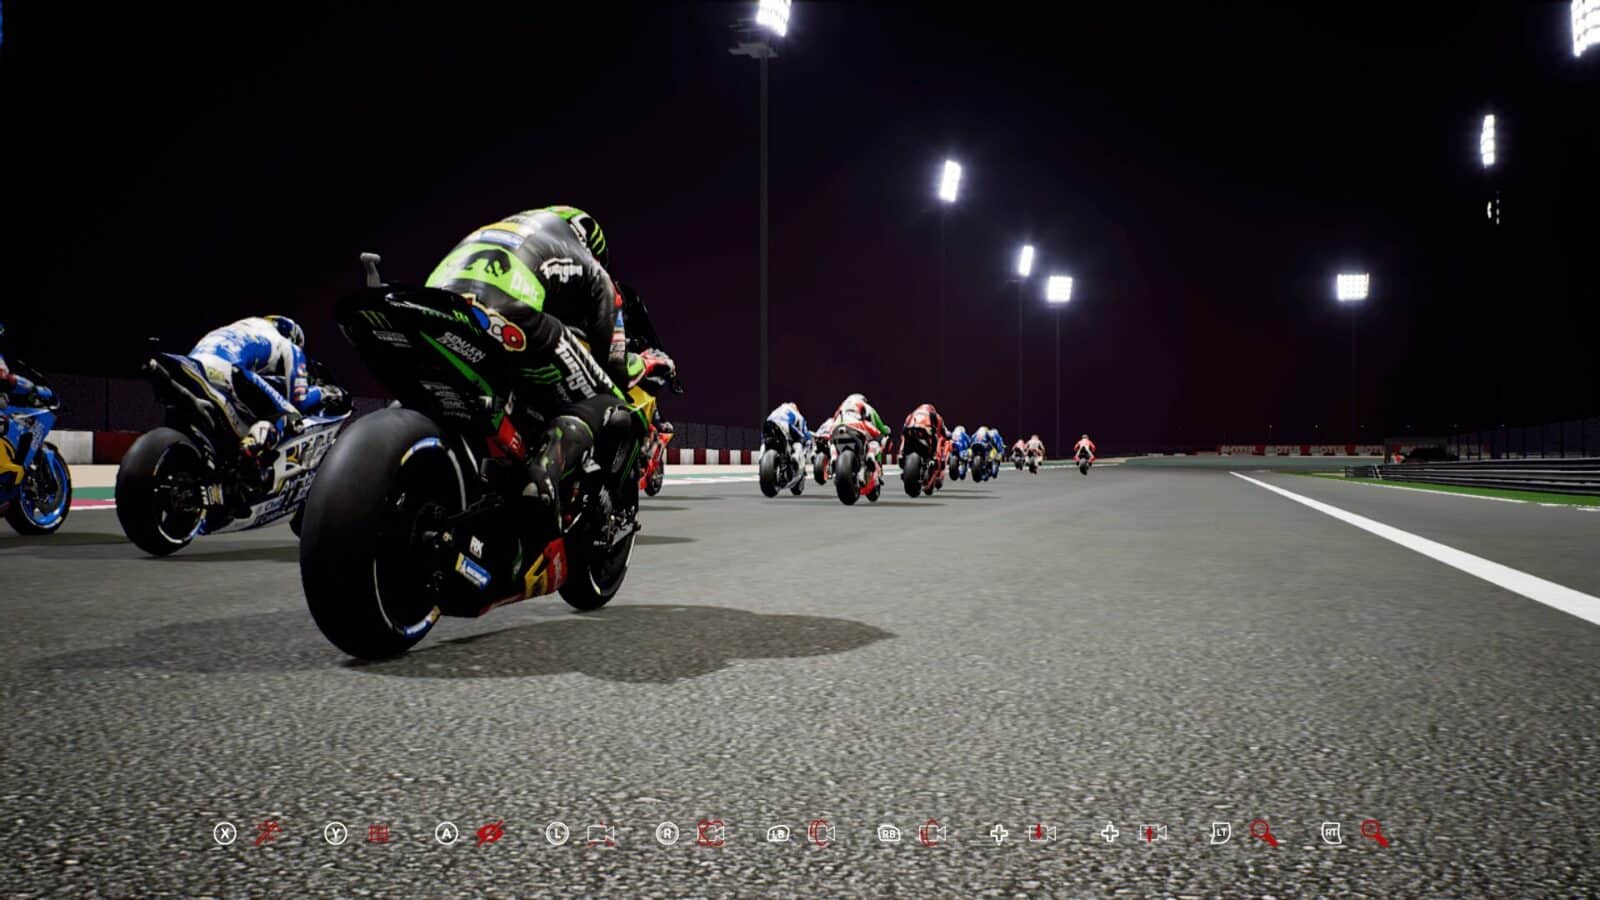 MotoGP 18 Kresys MotoGP18 20180904 17 08 01 MotoGP 18 – La simulation moto par excellence ? gaming